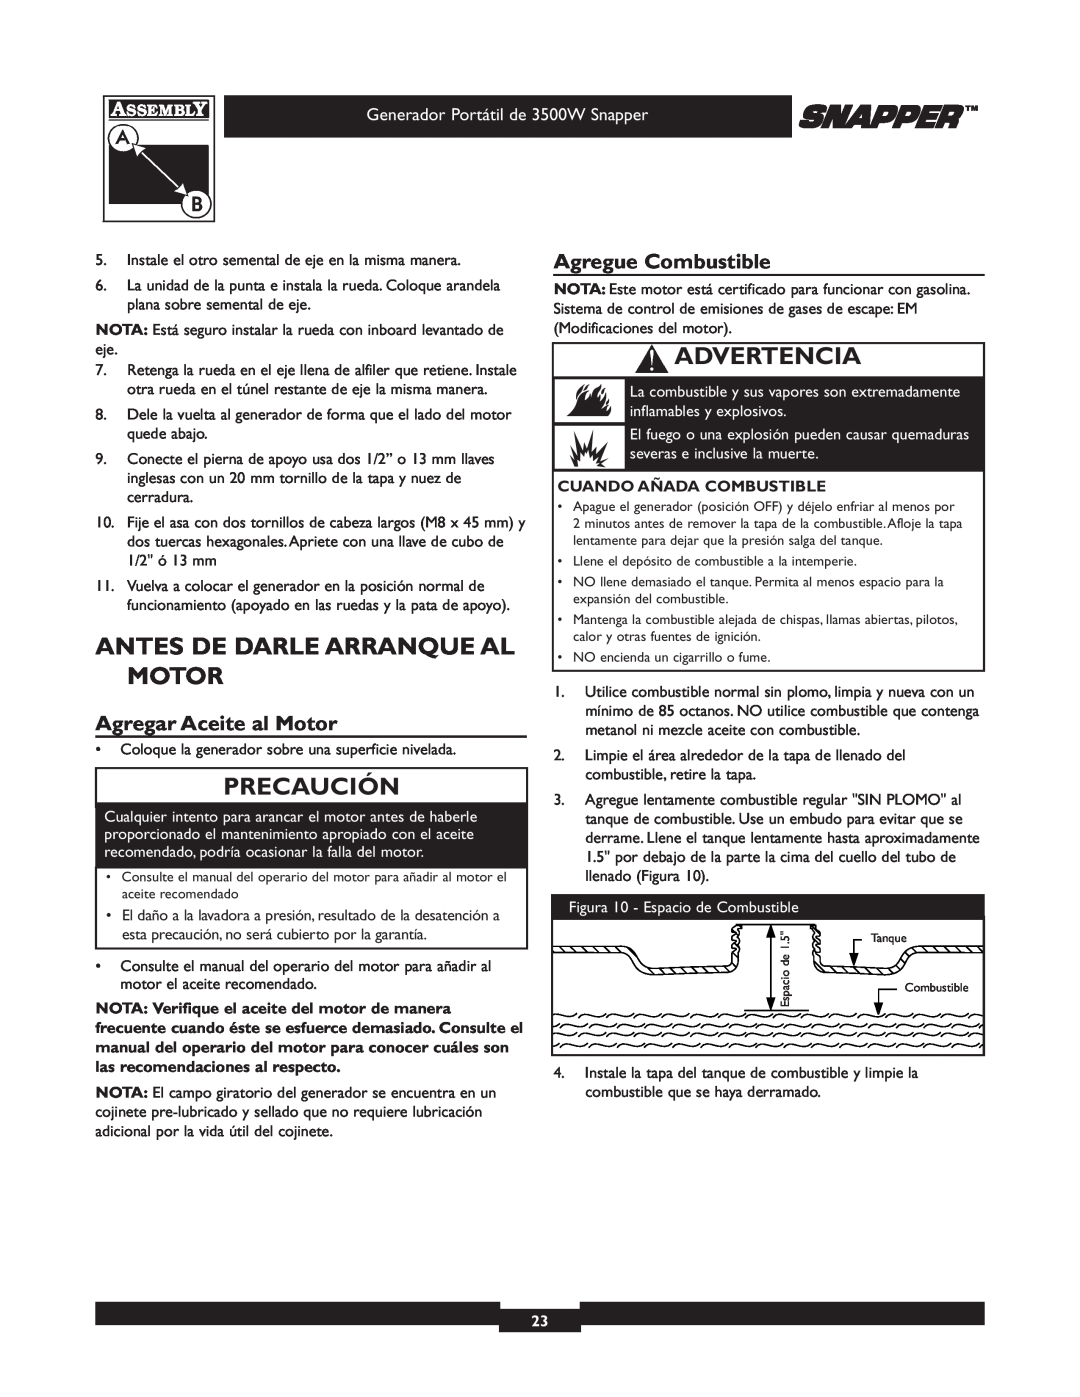 Snapper 3500 manual Antes De Darle Arranque Al Motor, Agregar Aceite al Motor, Agregue Combustible, Precaución, Advertencia 